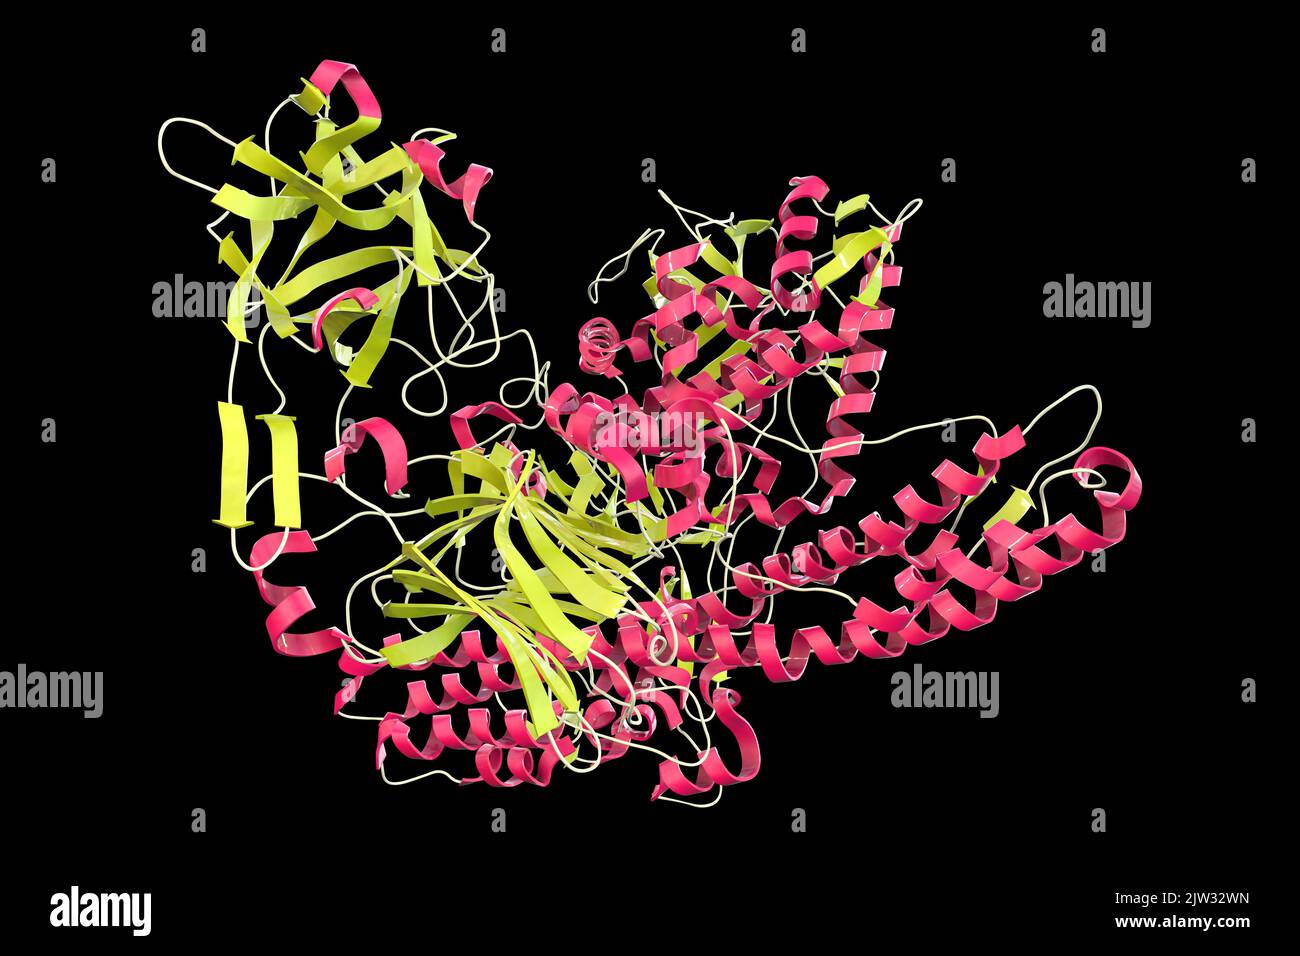 Molécule de neurotoxine tétanique, illustration. Il s'agit d'une protéine neurotoxique produite par la bactérie Clostridium tetani, l'agent responsable du tétanos. Banque D'Images